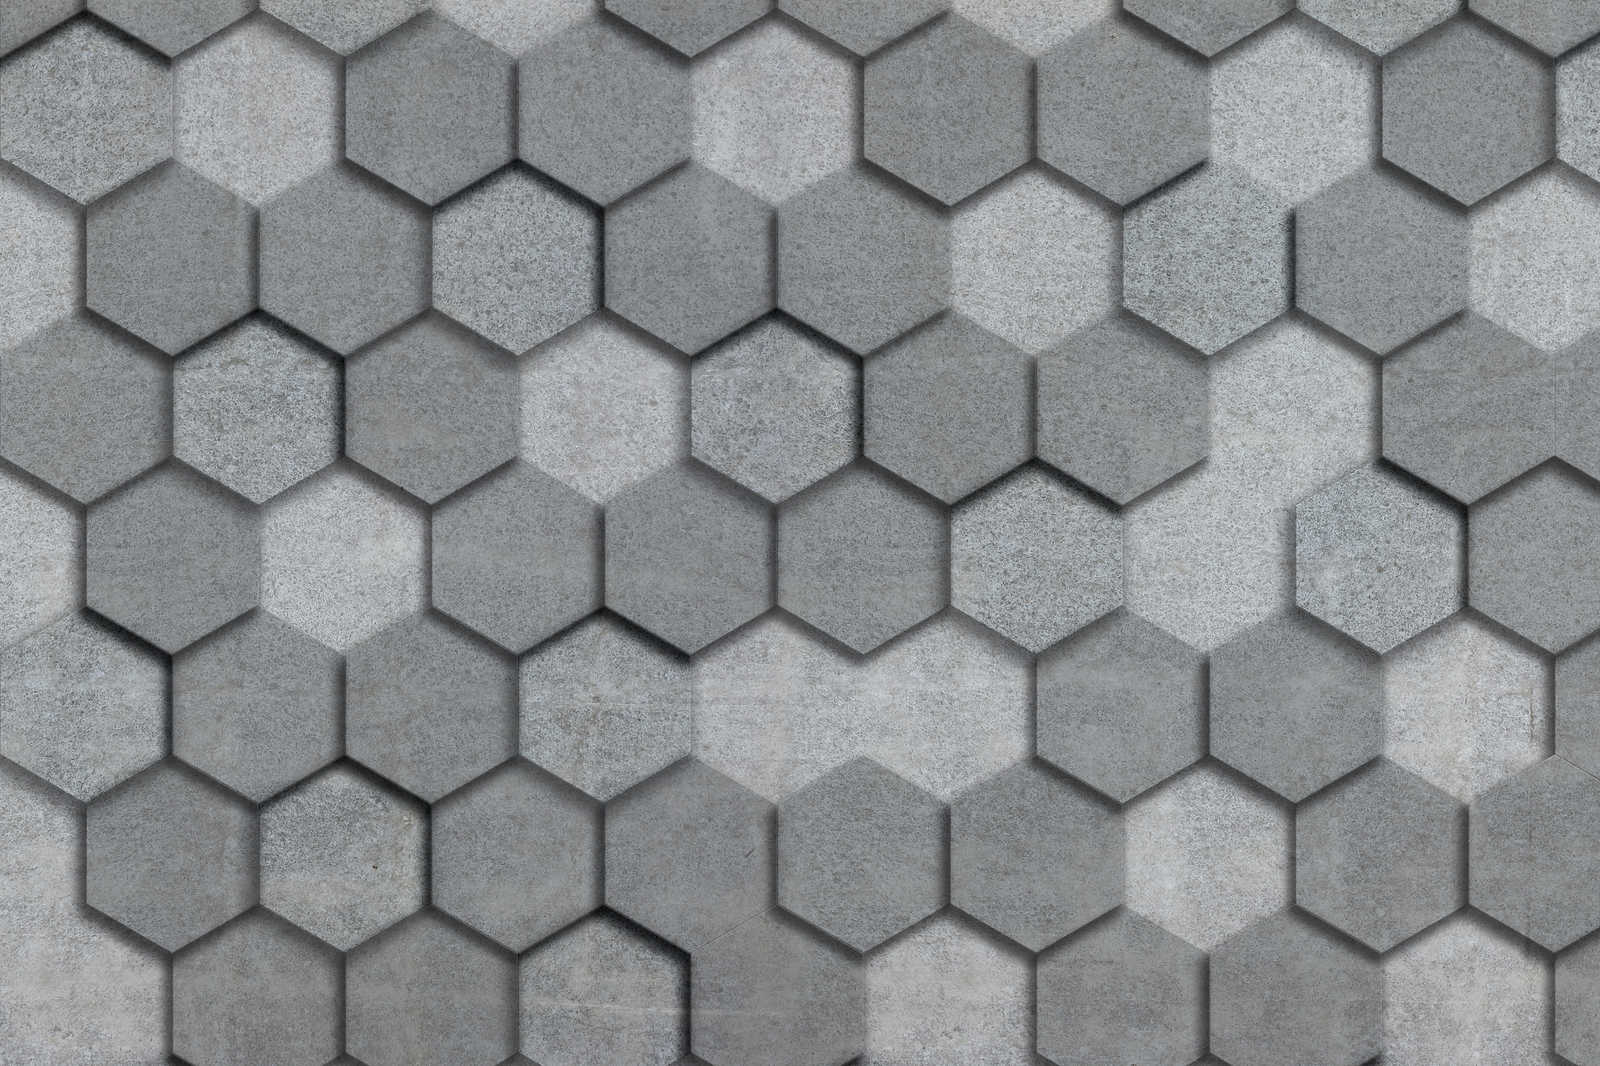             Toile avec carreaux géométriques hexagonaux aspect 3D | gris, argenté - 0,90 m x 0,60 m
        